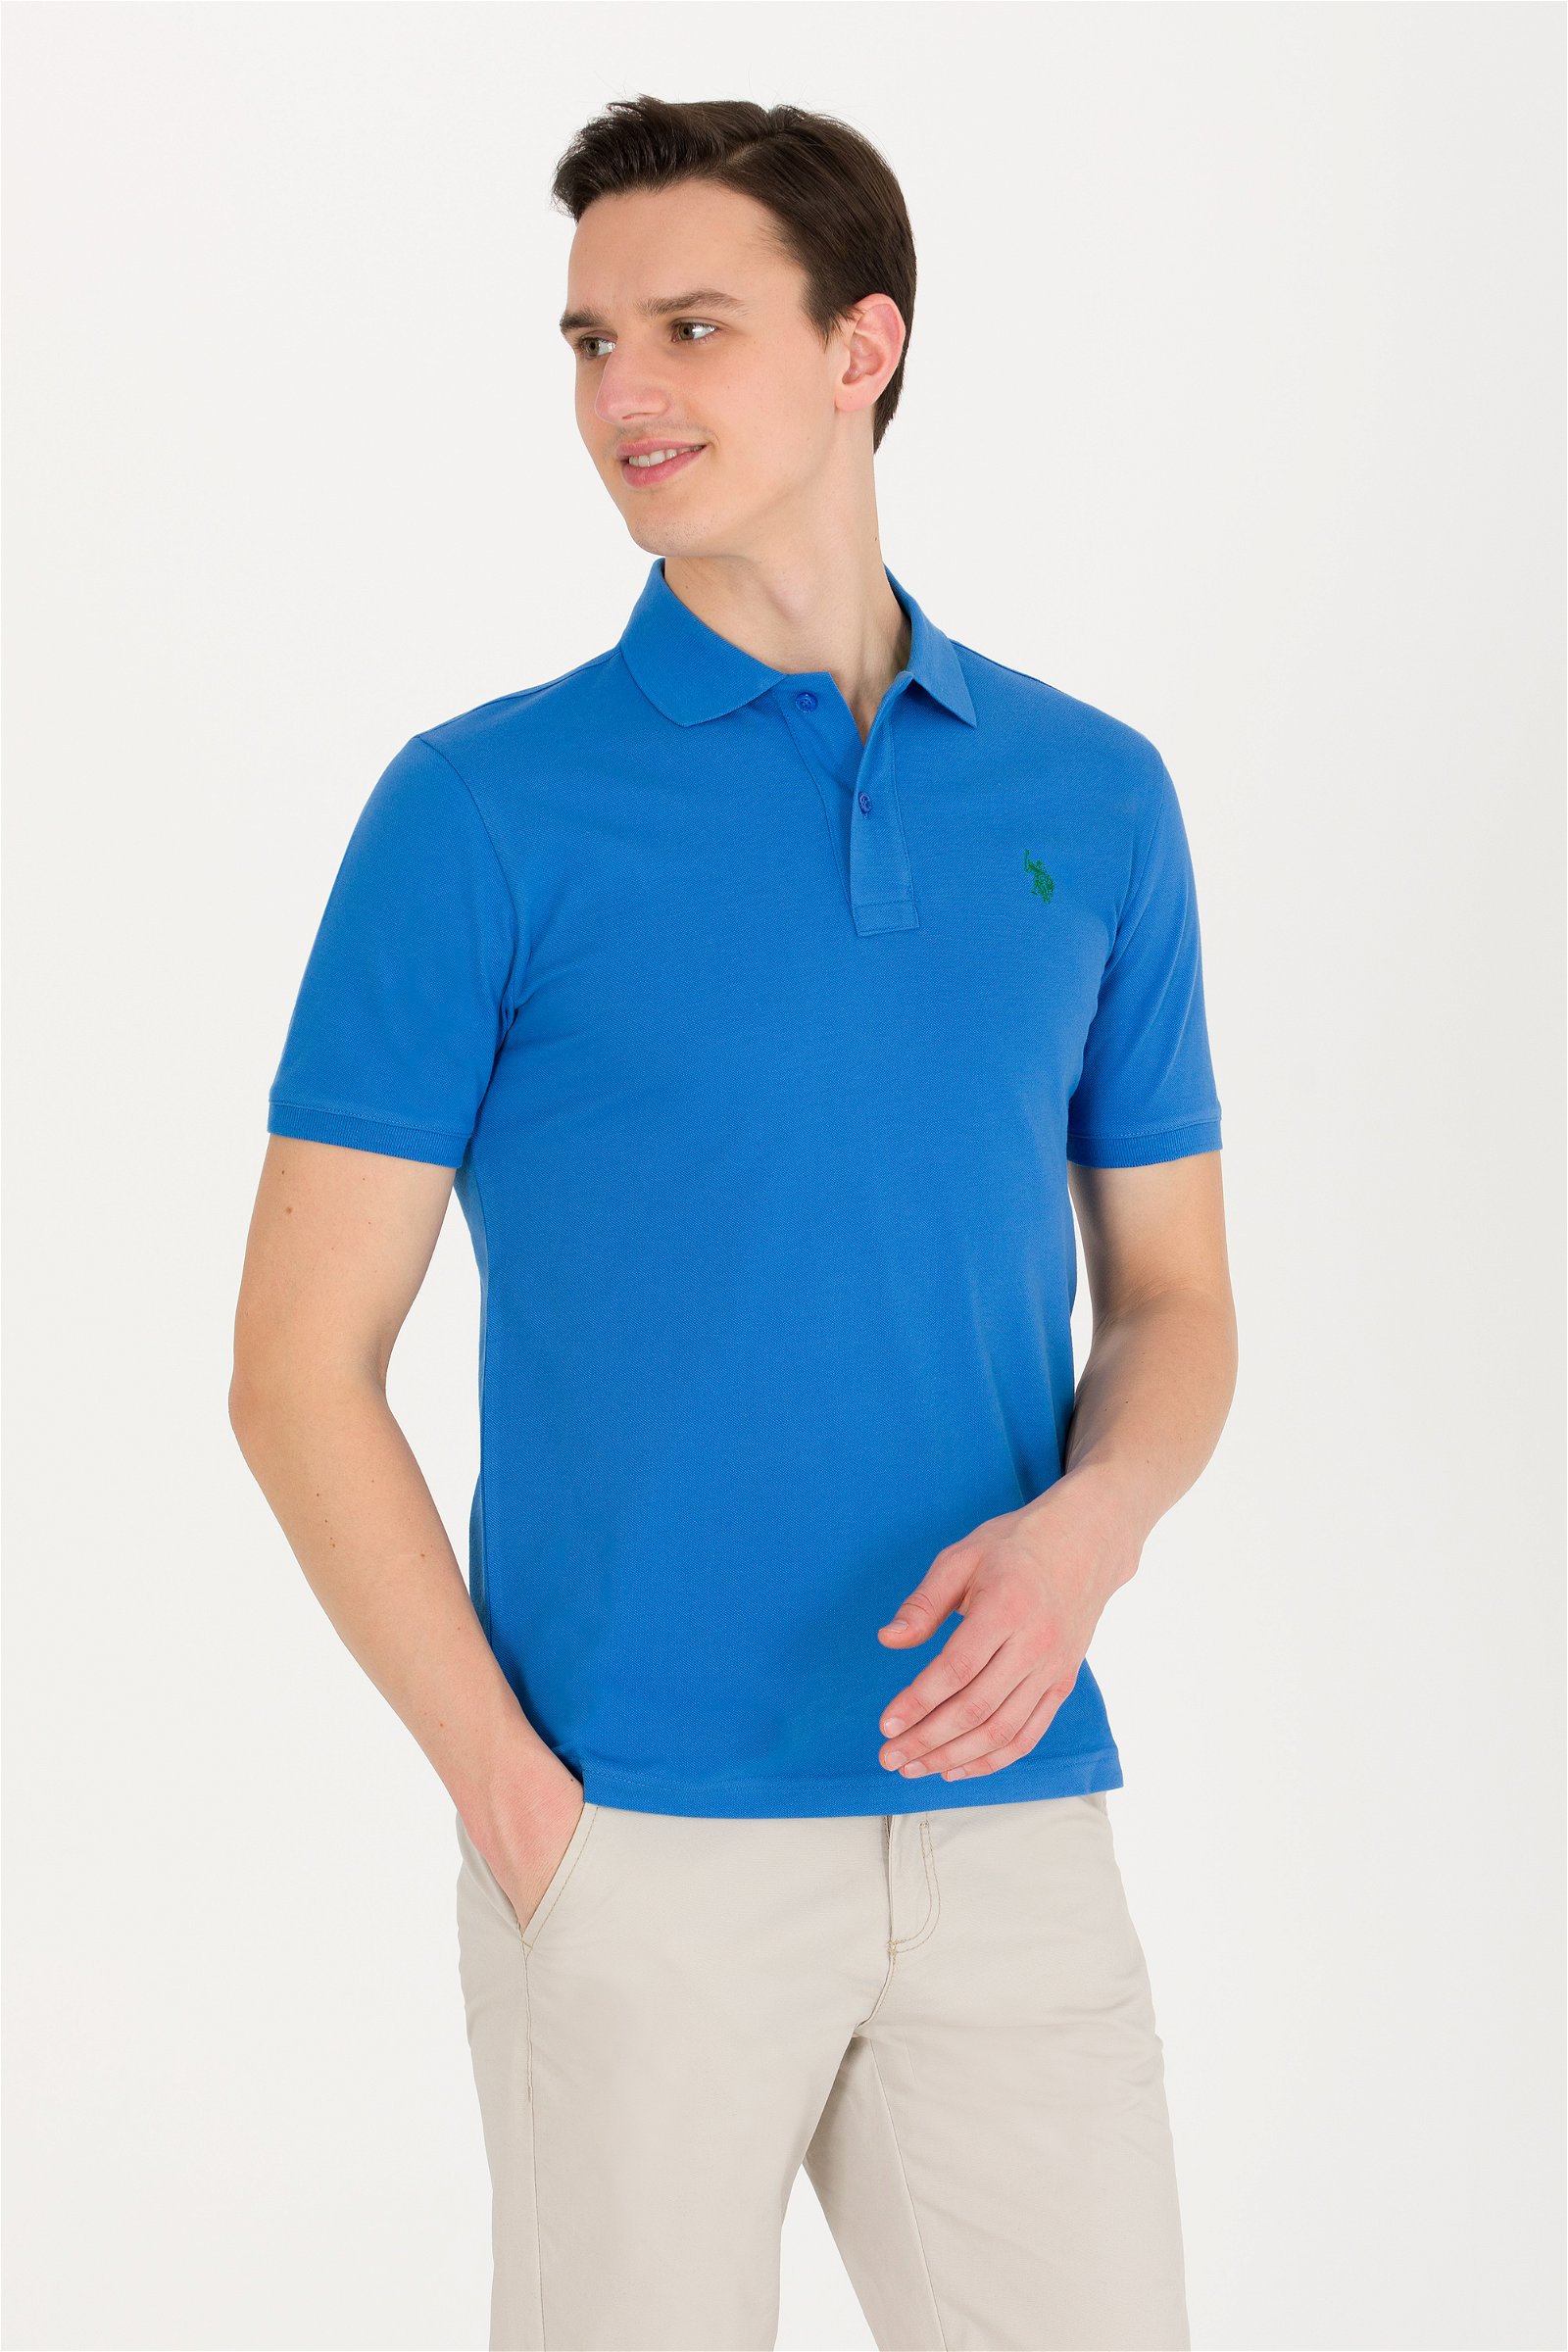 تی شرت یقه پولو آبی  اندامی  مردانه یو اس پولو | US POLO ASSN